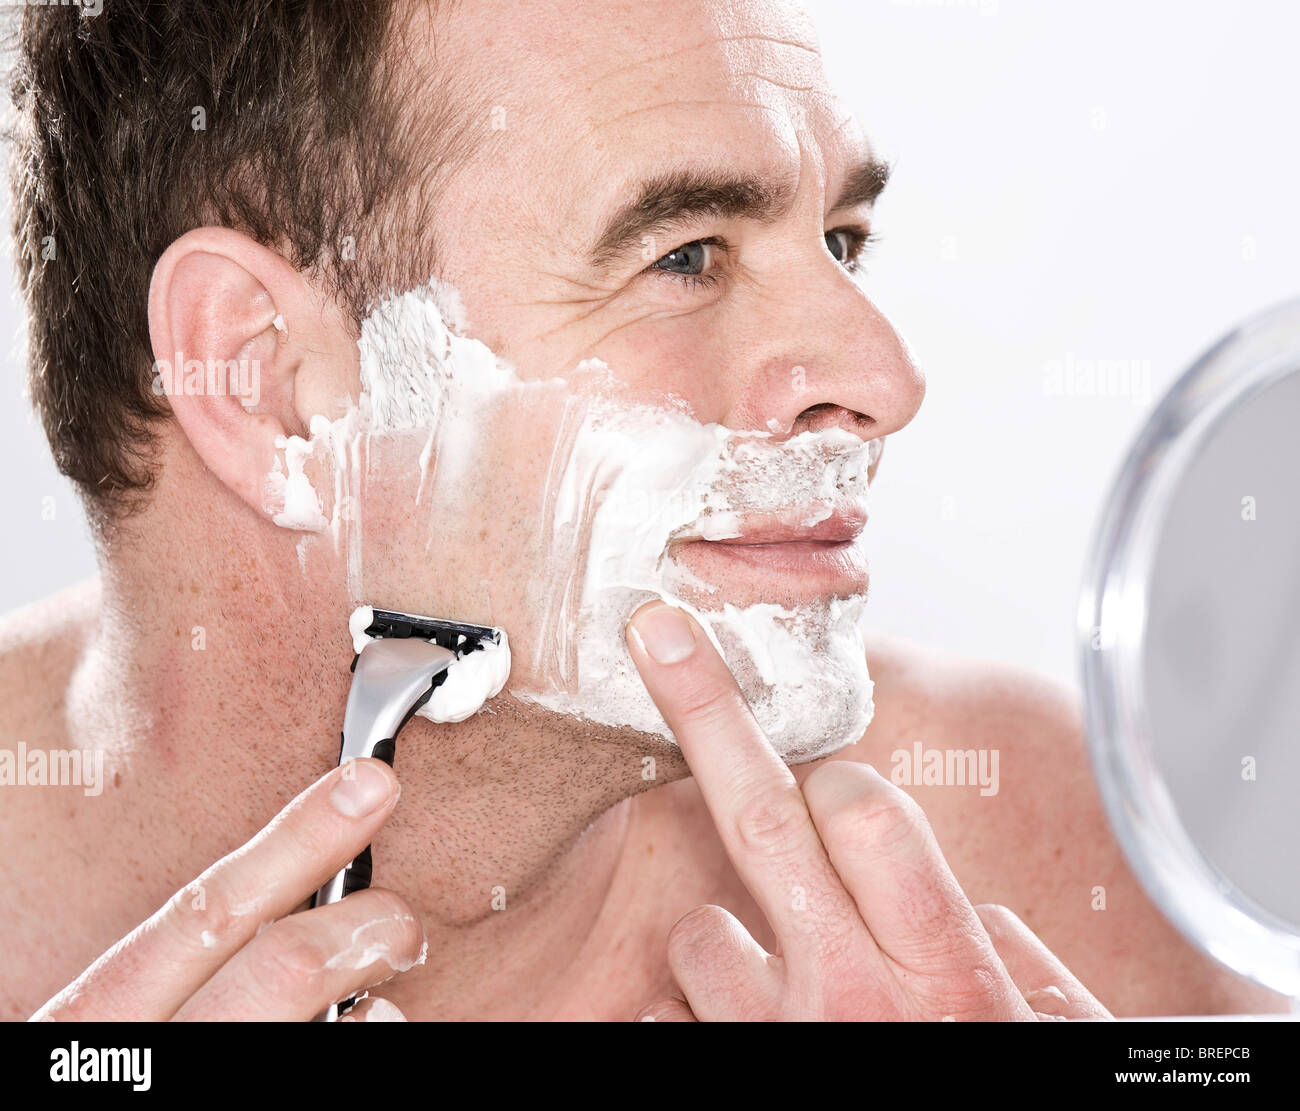 Мужчины бреет видео. Бритье лица. Мужское бритье лица. Бритье кожи.